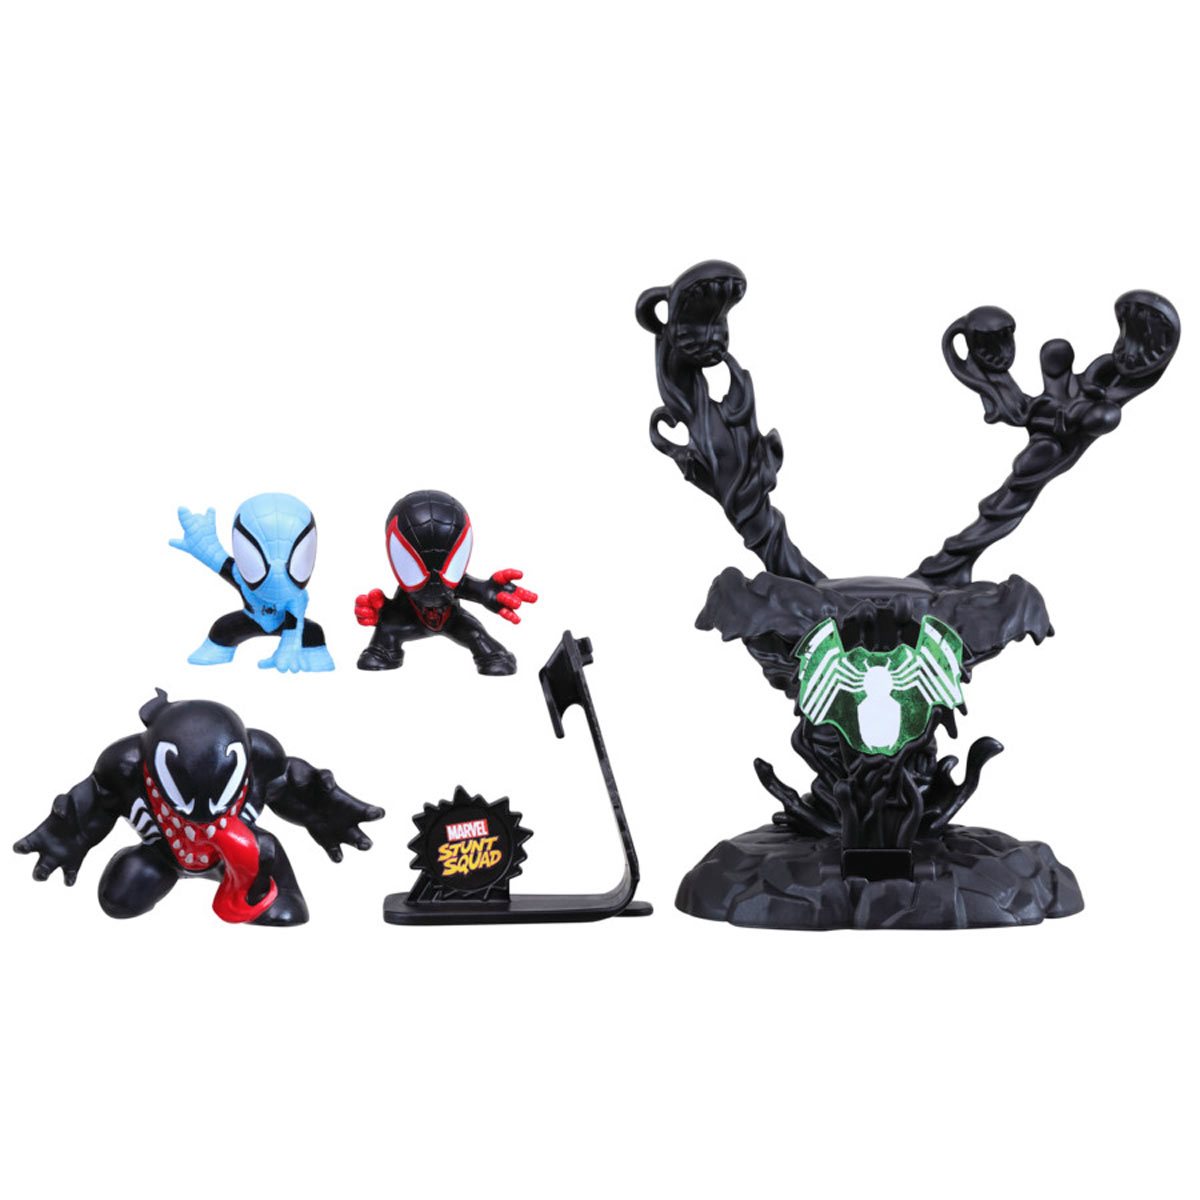 Spider-Man Titan Hero Series, Figurine de Collection Deluxe Venom d